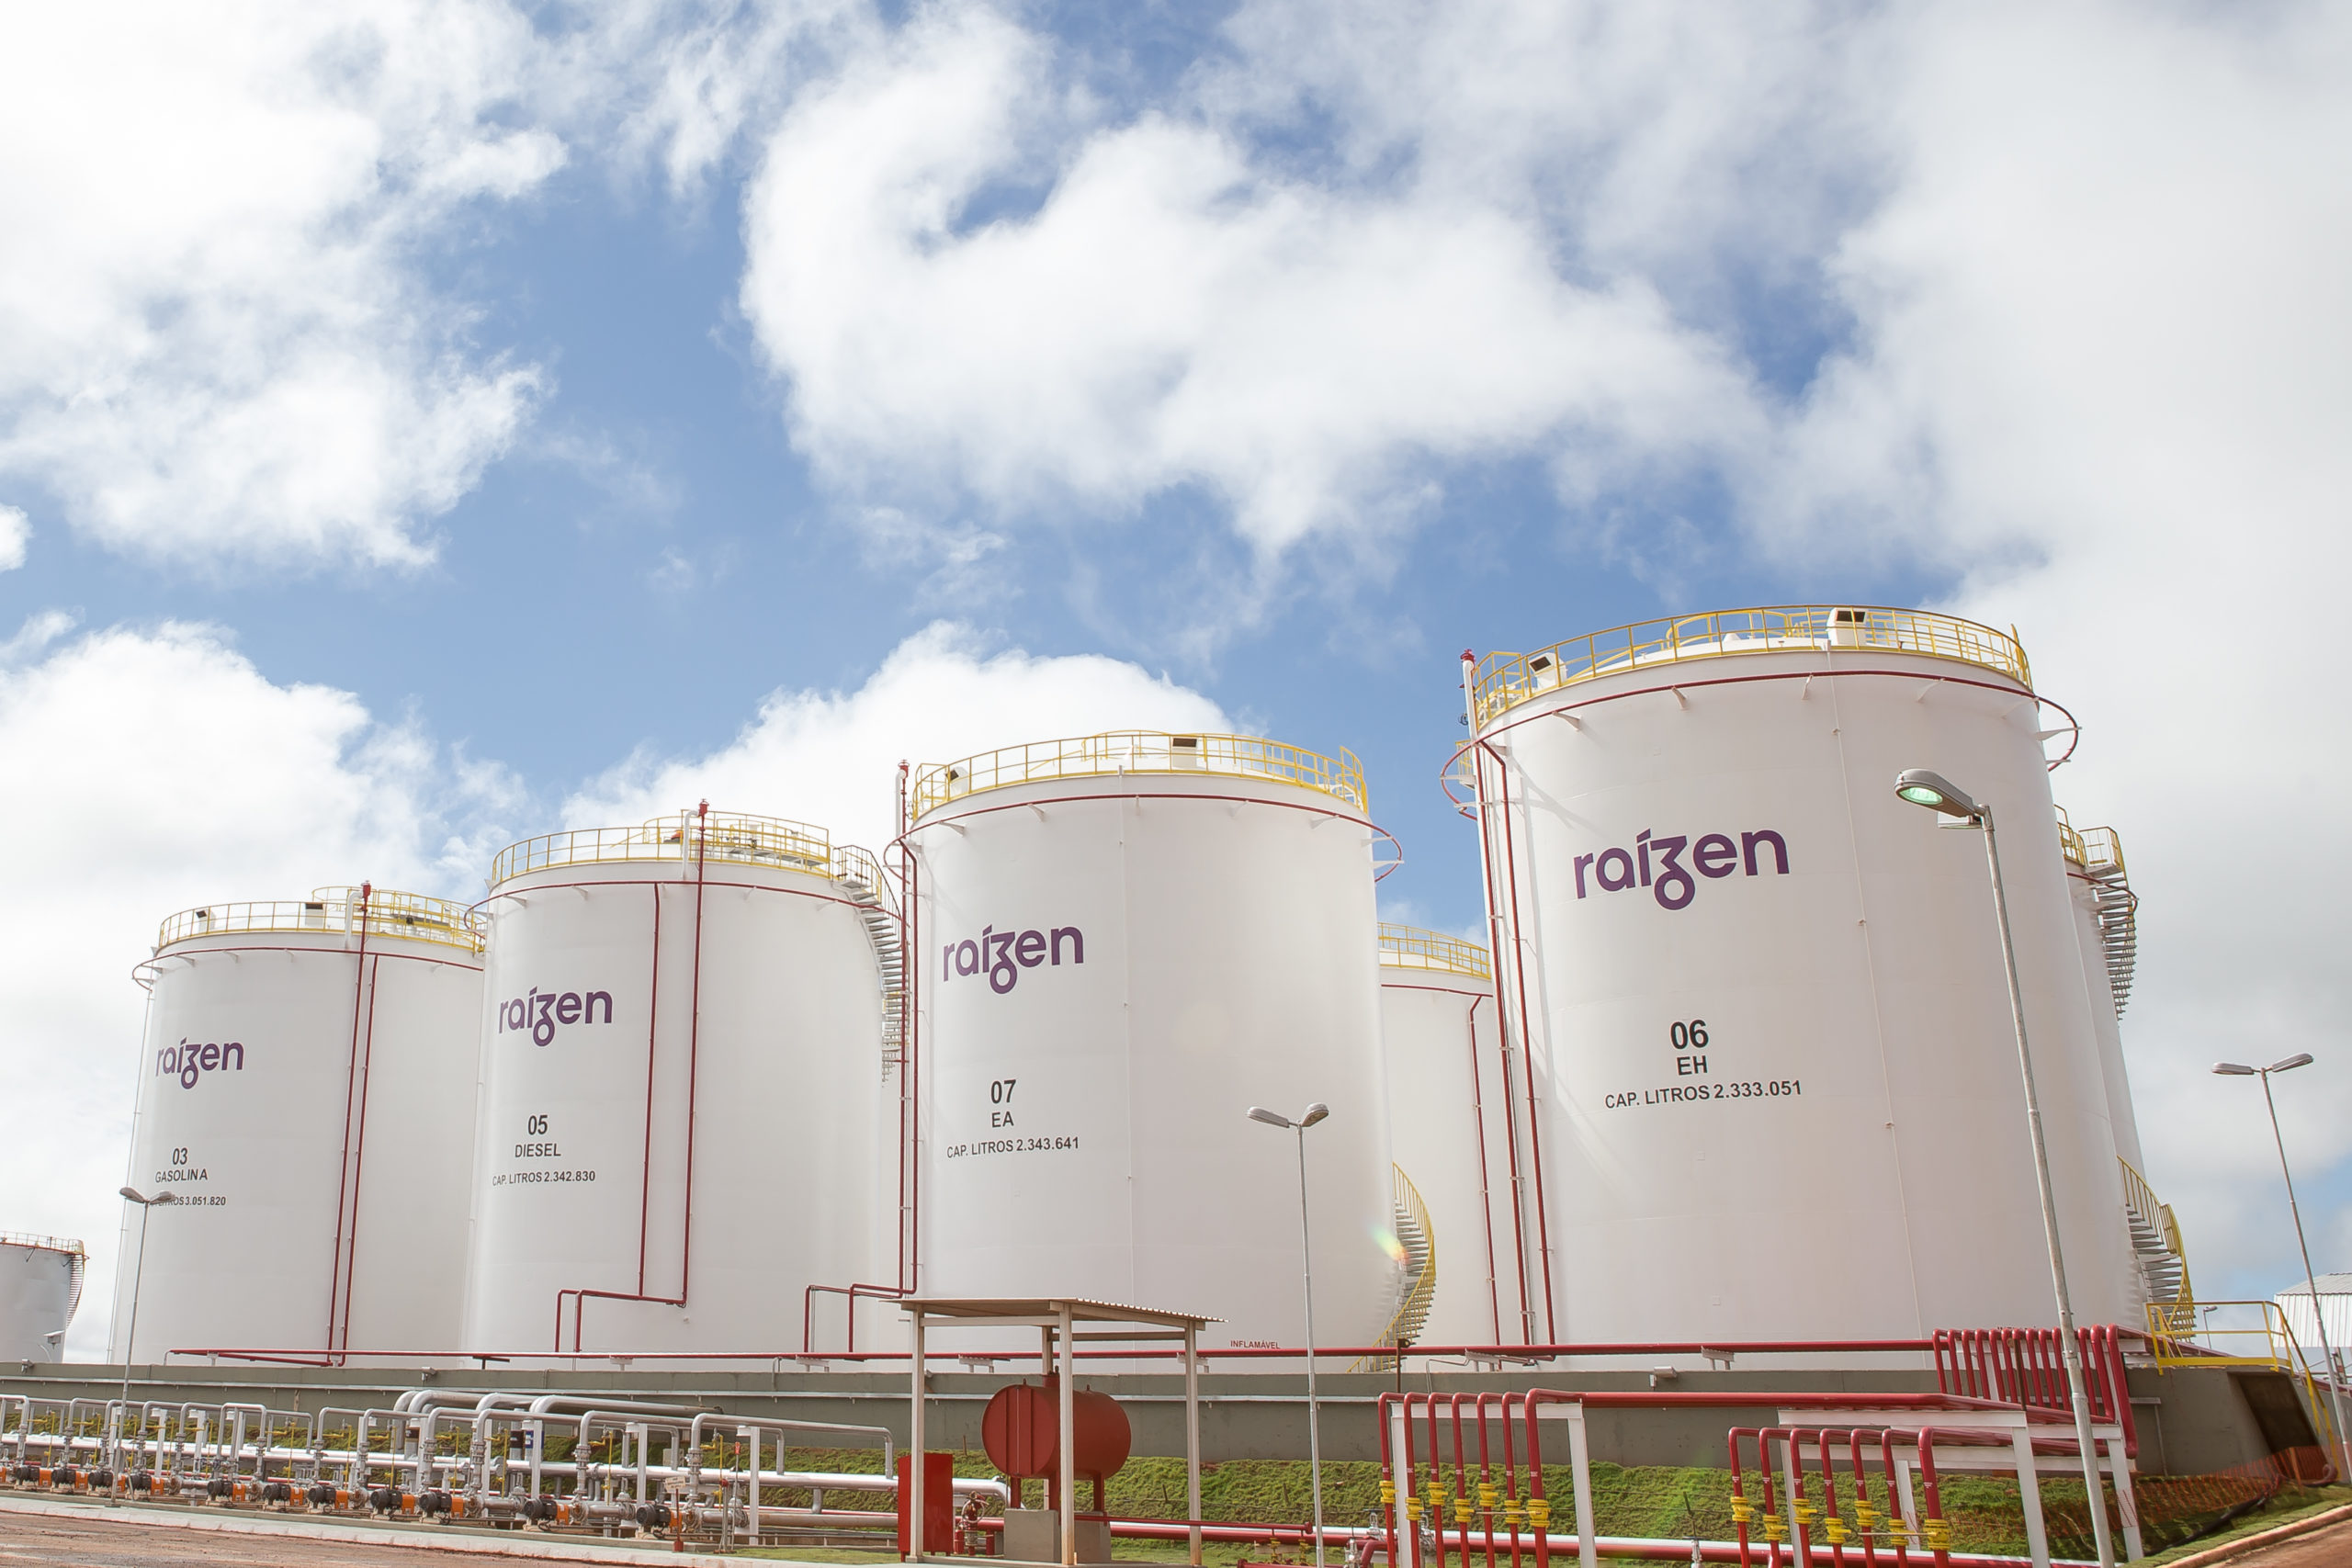 Shell fecha acordo de compra de 3,25 bilhões de litros de etanol 2G da Raízen. Na imagem: Dutos e tanques de armazenamento de biocombustíveis imensos, na cor branca, com a inscrição "Raízen", na base de combustíveis em Rondonópolis, no Mato Grosso (Foto: Divulgação Raízen)